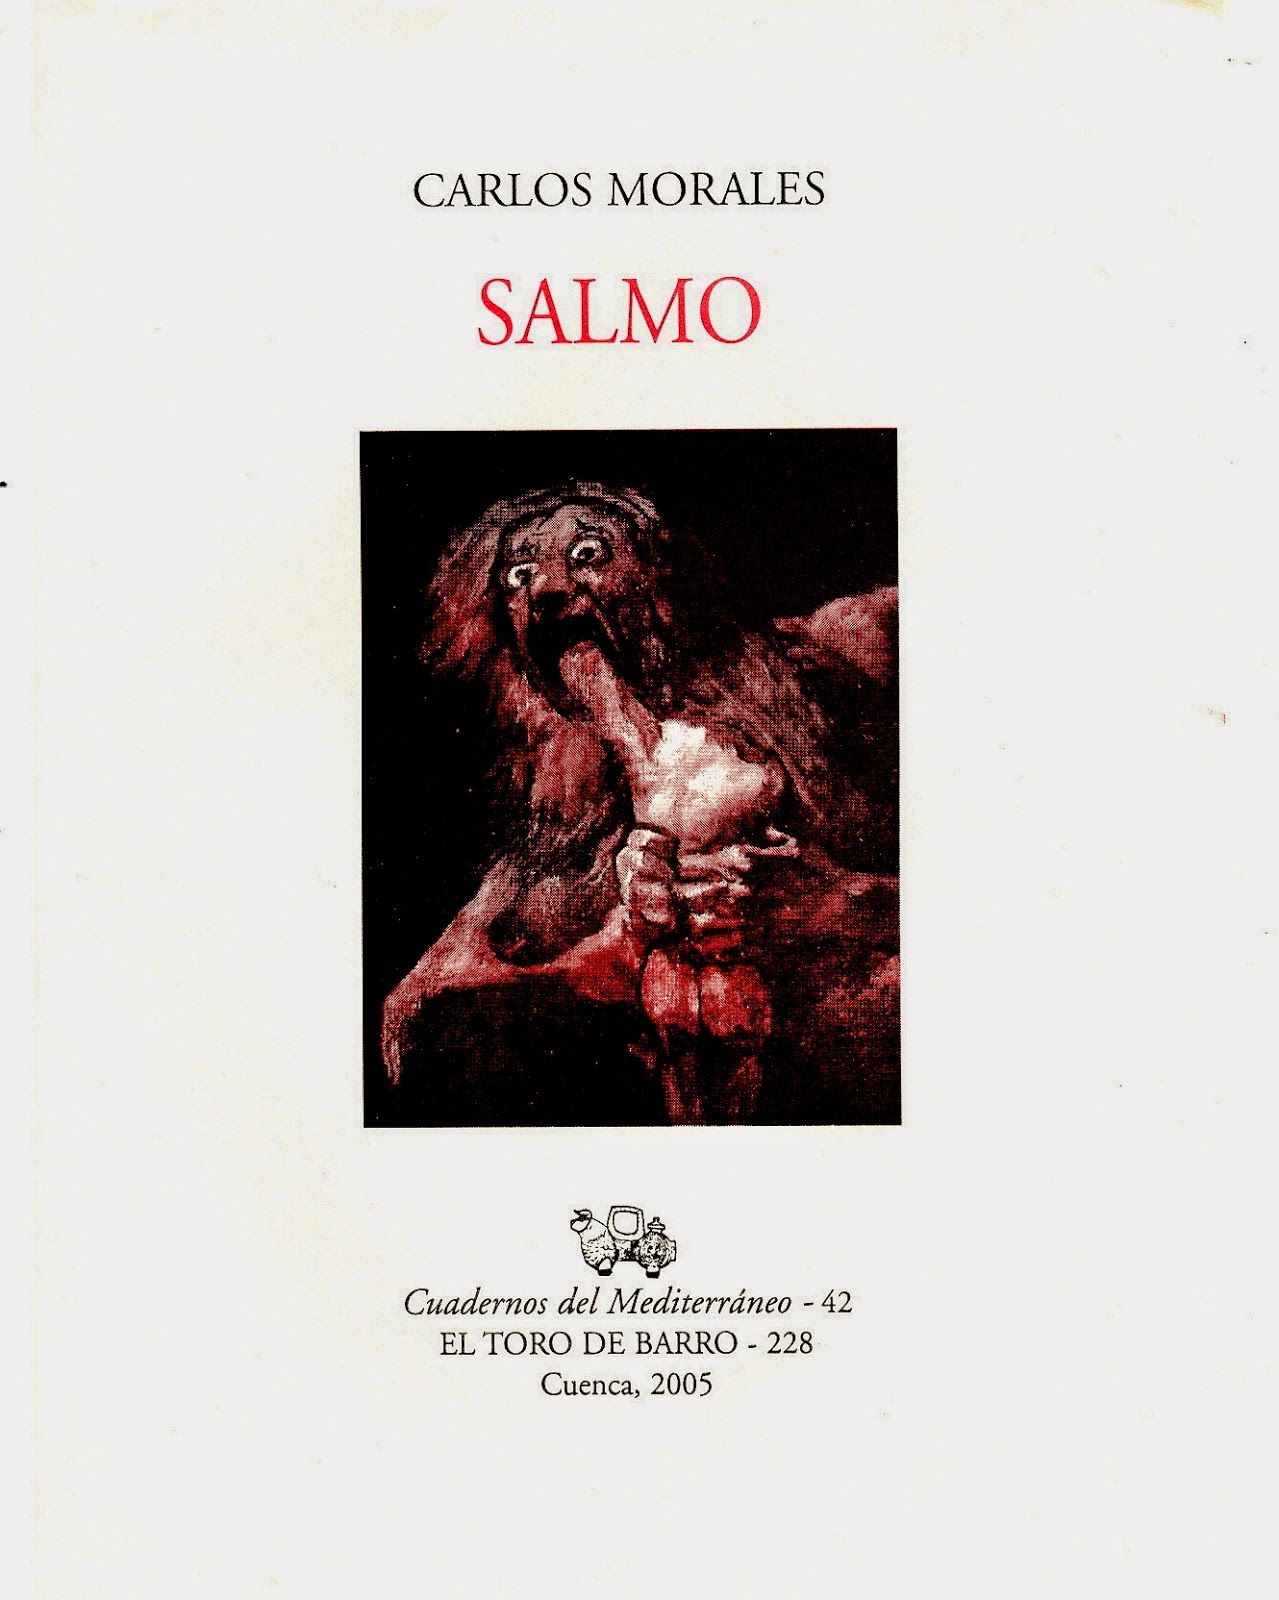 Carlos Morales, "Salmo" Col. Cuadernos del Mediterráneo  Ed. El Toro de Barro,  Tarancón de Cuenca, 2005.  edicioneseltorodebarro@yahoo.es